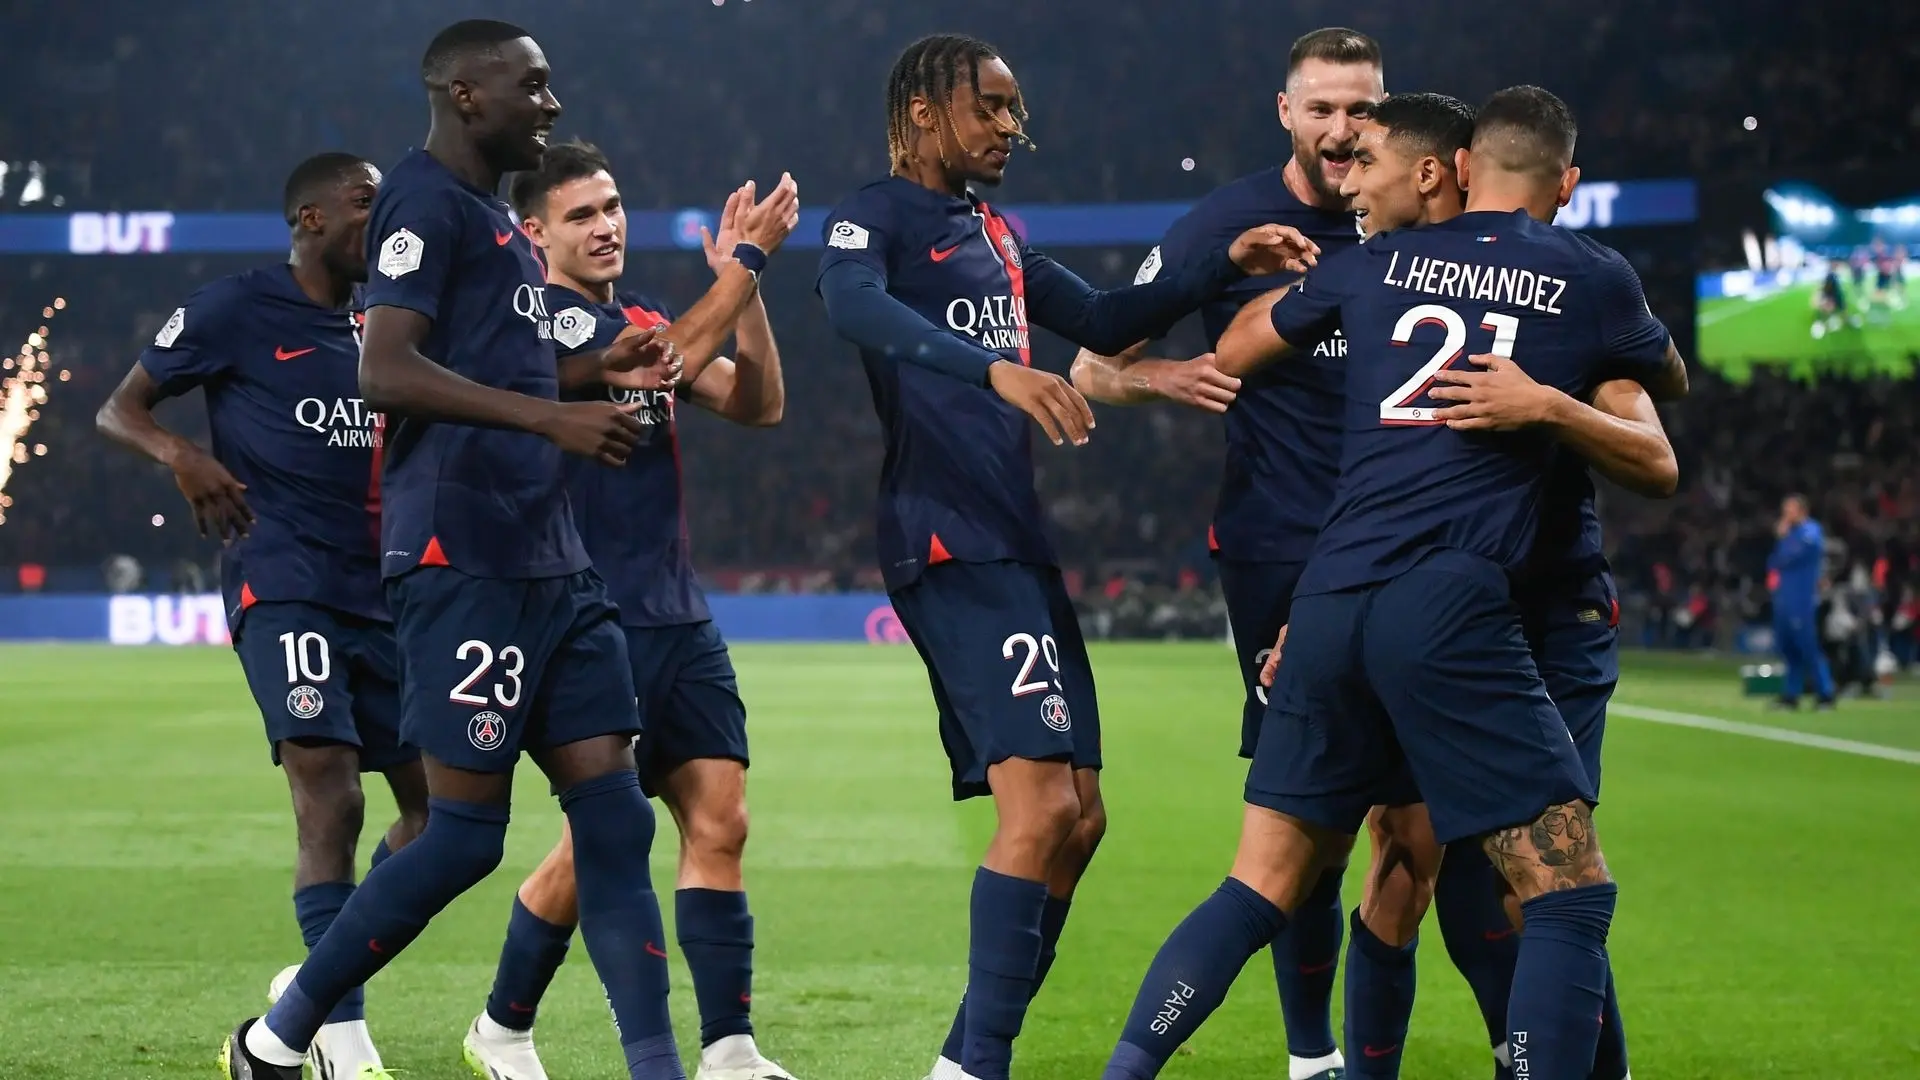 مقالة  : باريس يستعد لمواجهة قوية أمام نيوكاسل في دوري أبطال أوروبا